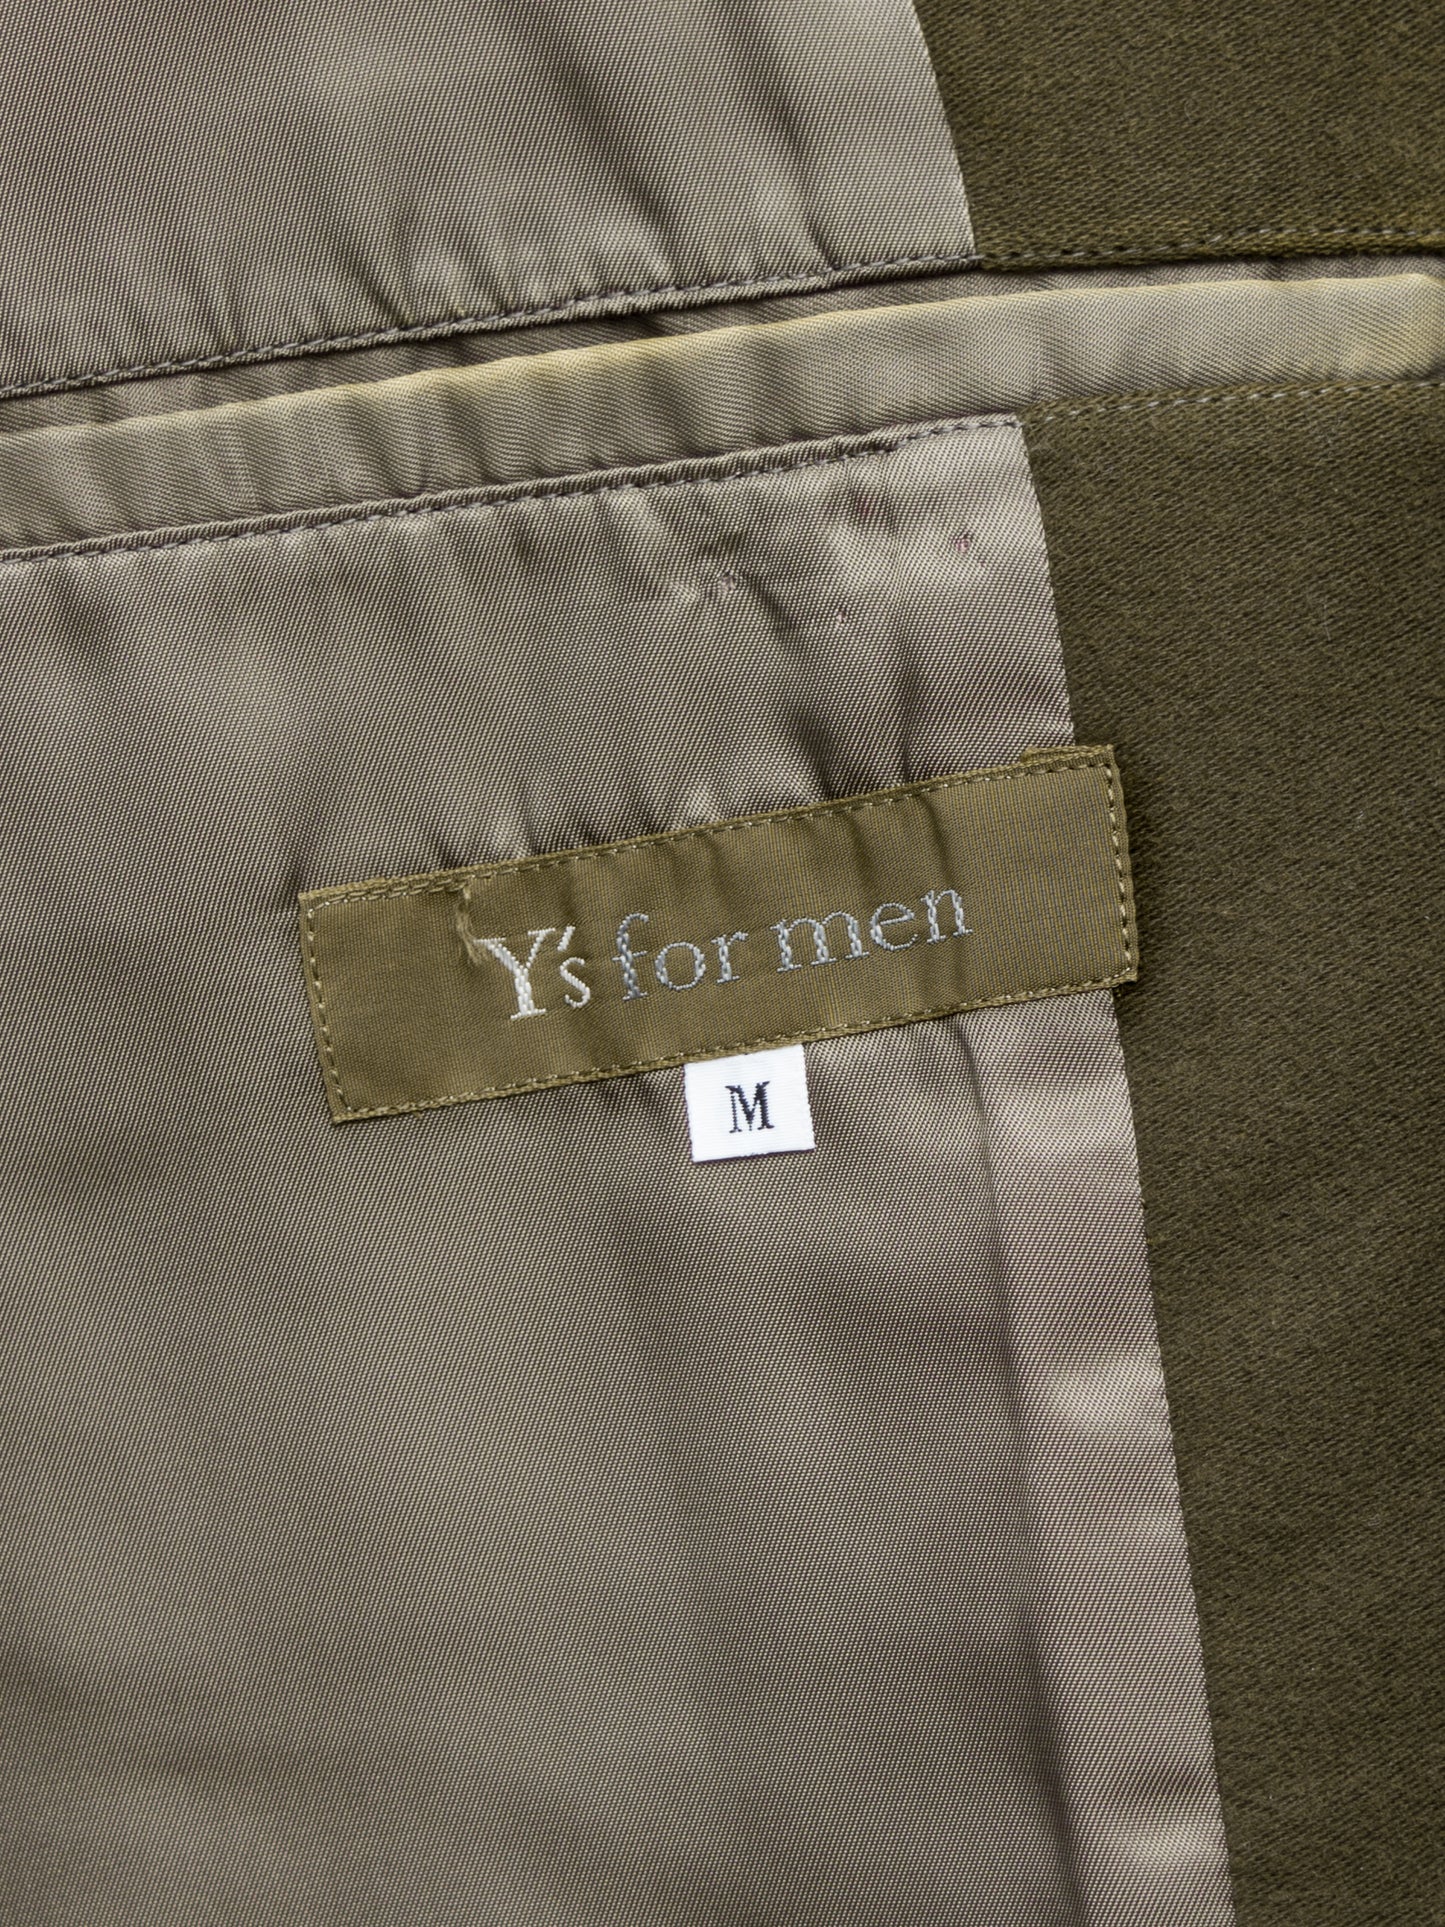 tailored jacket olive brown ∙ cotton moleskin ∙ medium